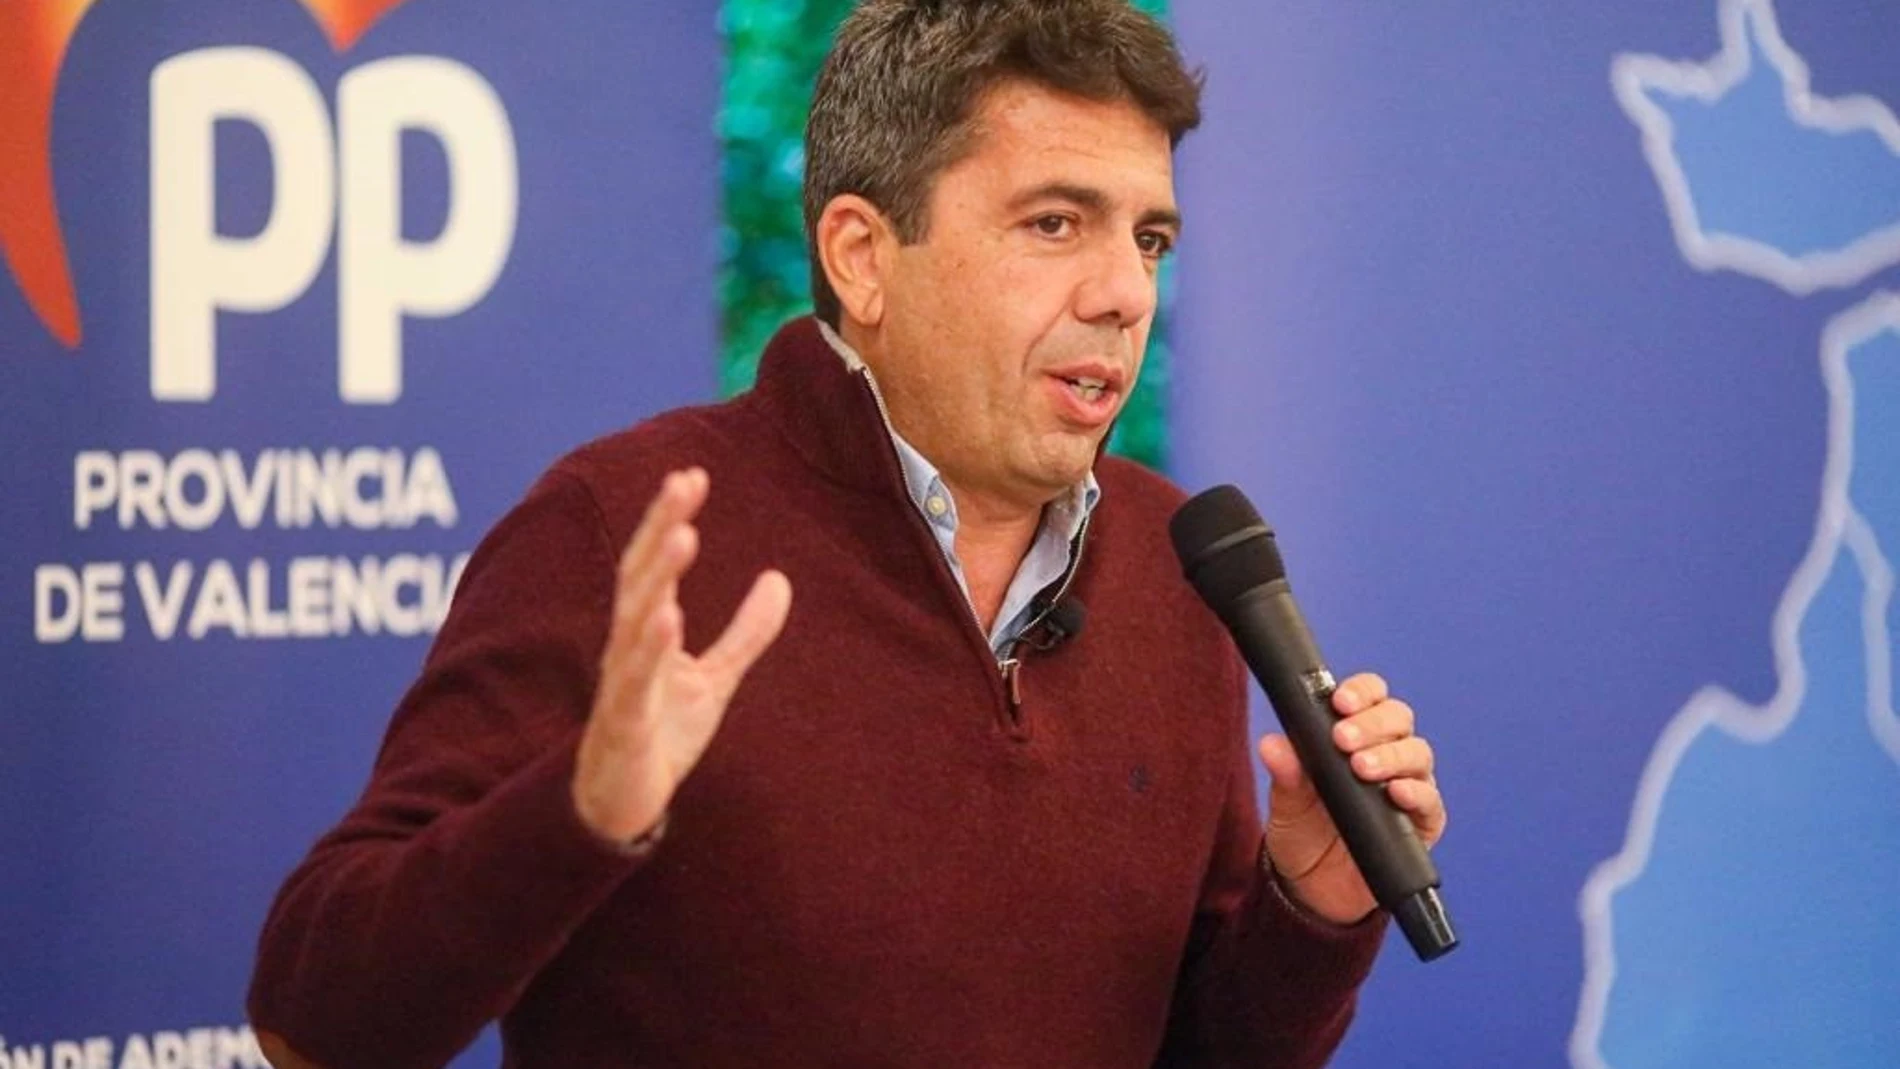 El presidente del PPCV, Carlos Mazón
PPCV
14/02/2022